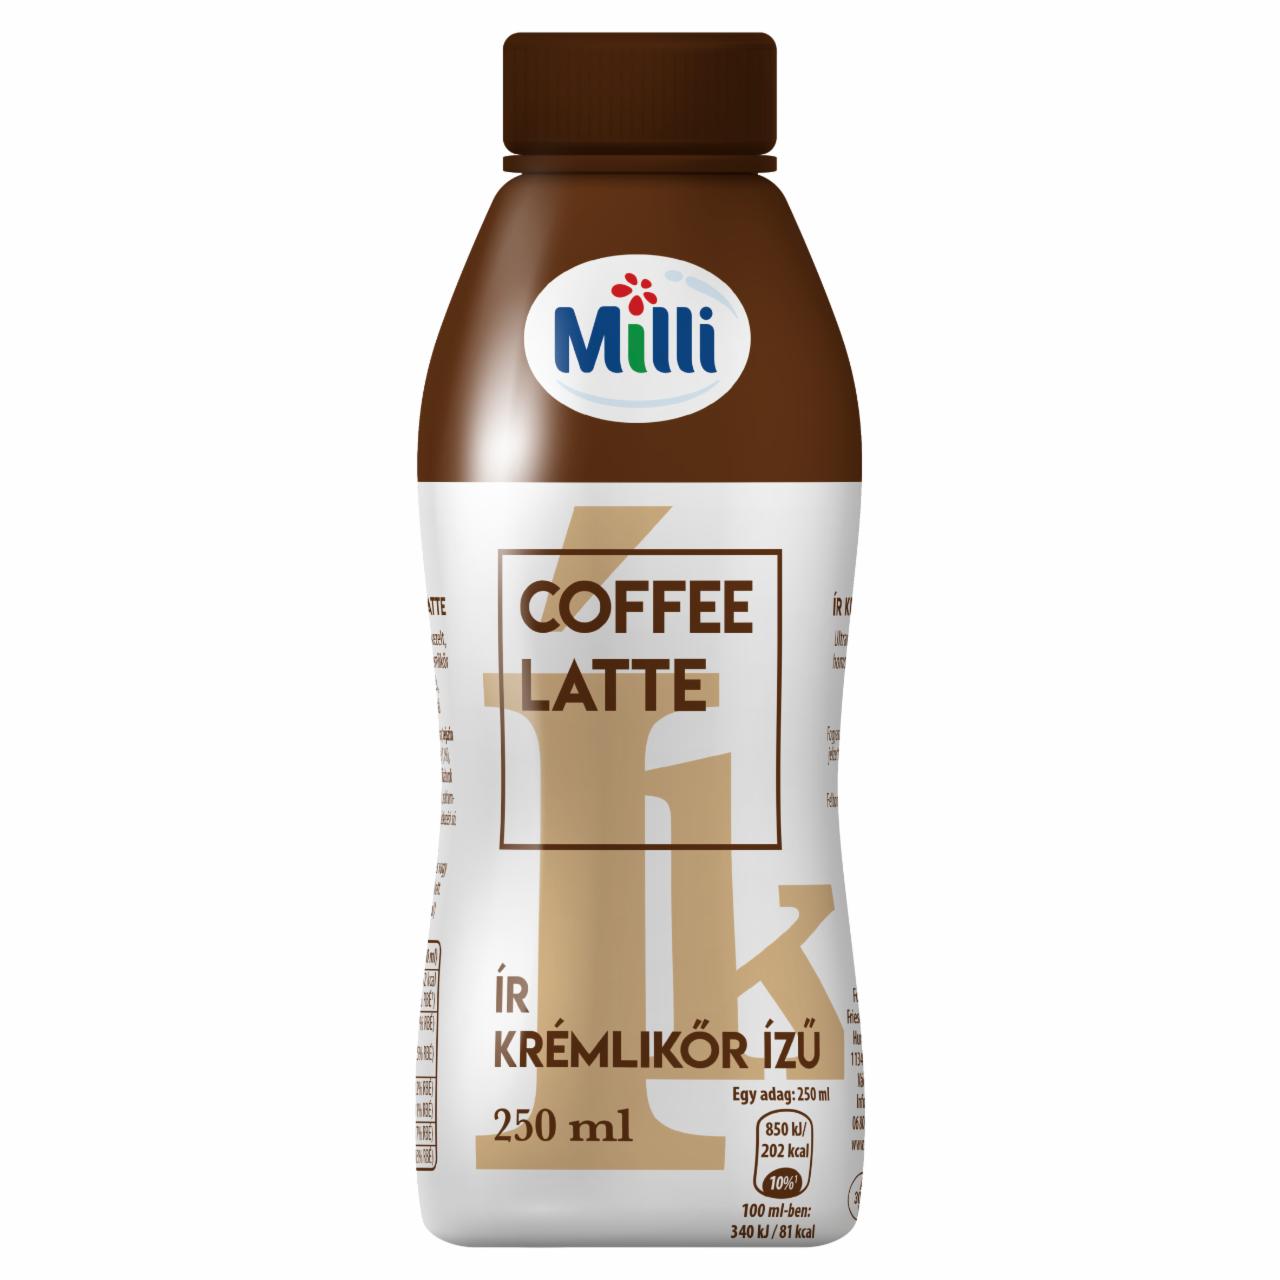 Képek - Milli Coffee Latte ír krémlikőr ízű tejeskávé tejszínnel 250 ml